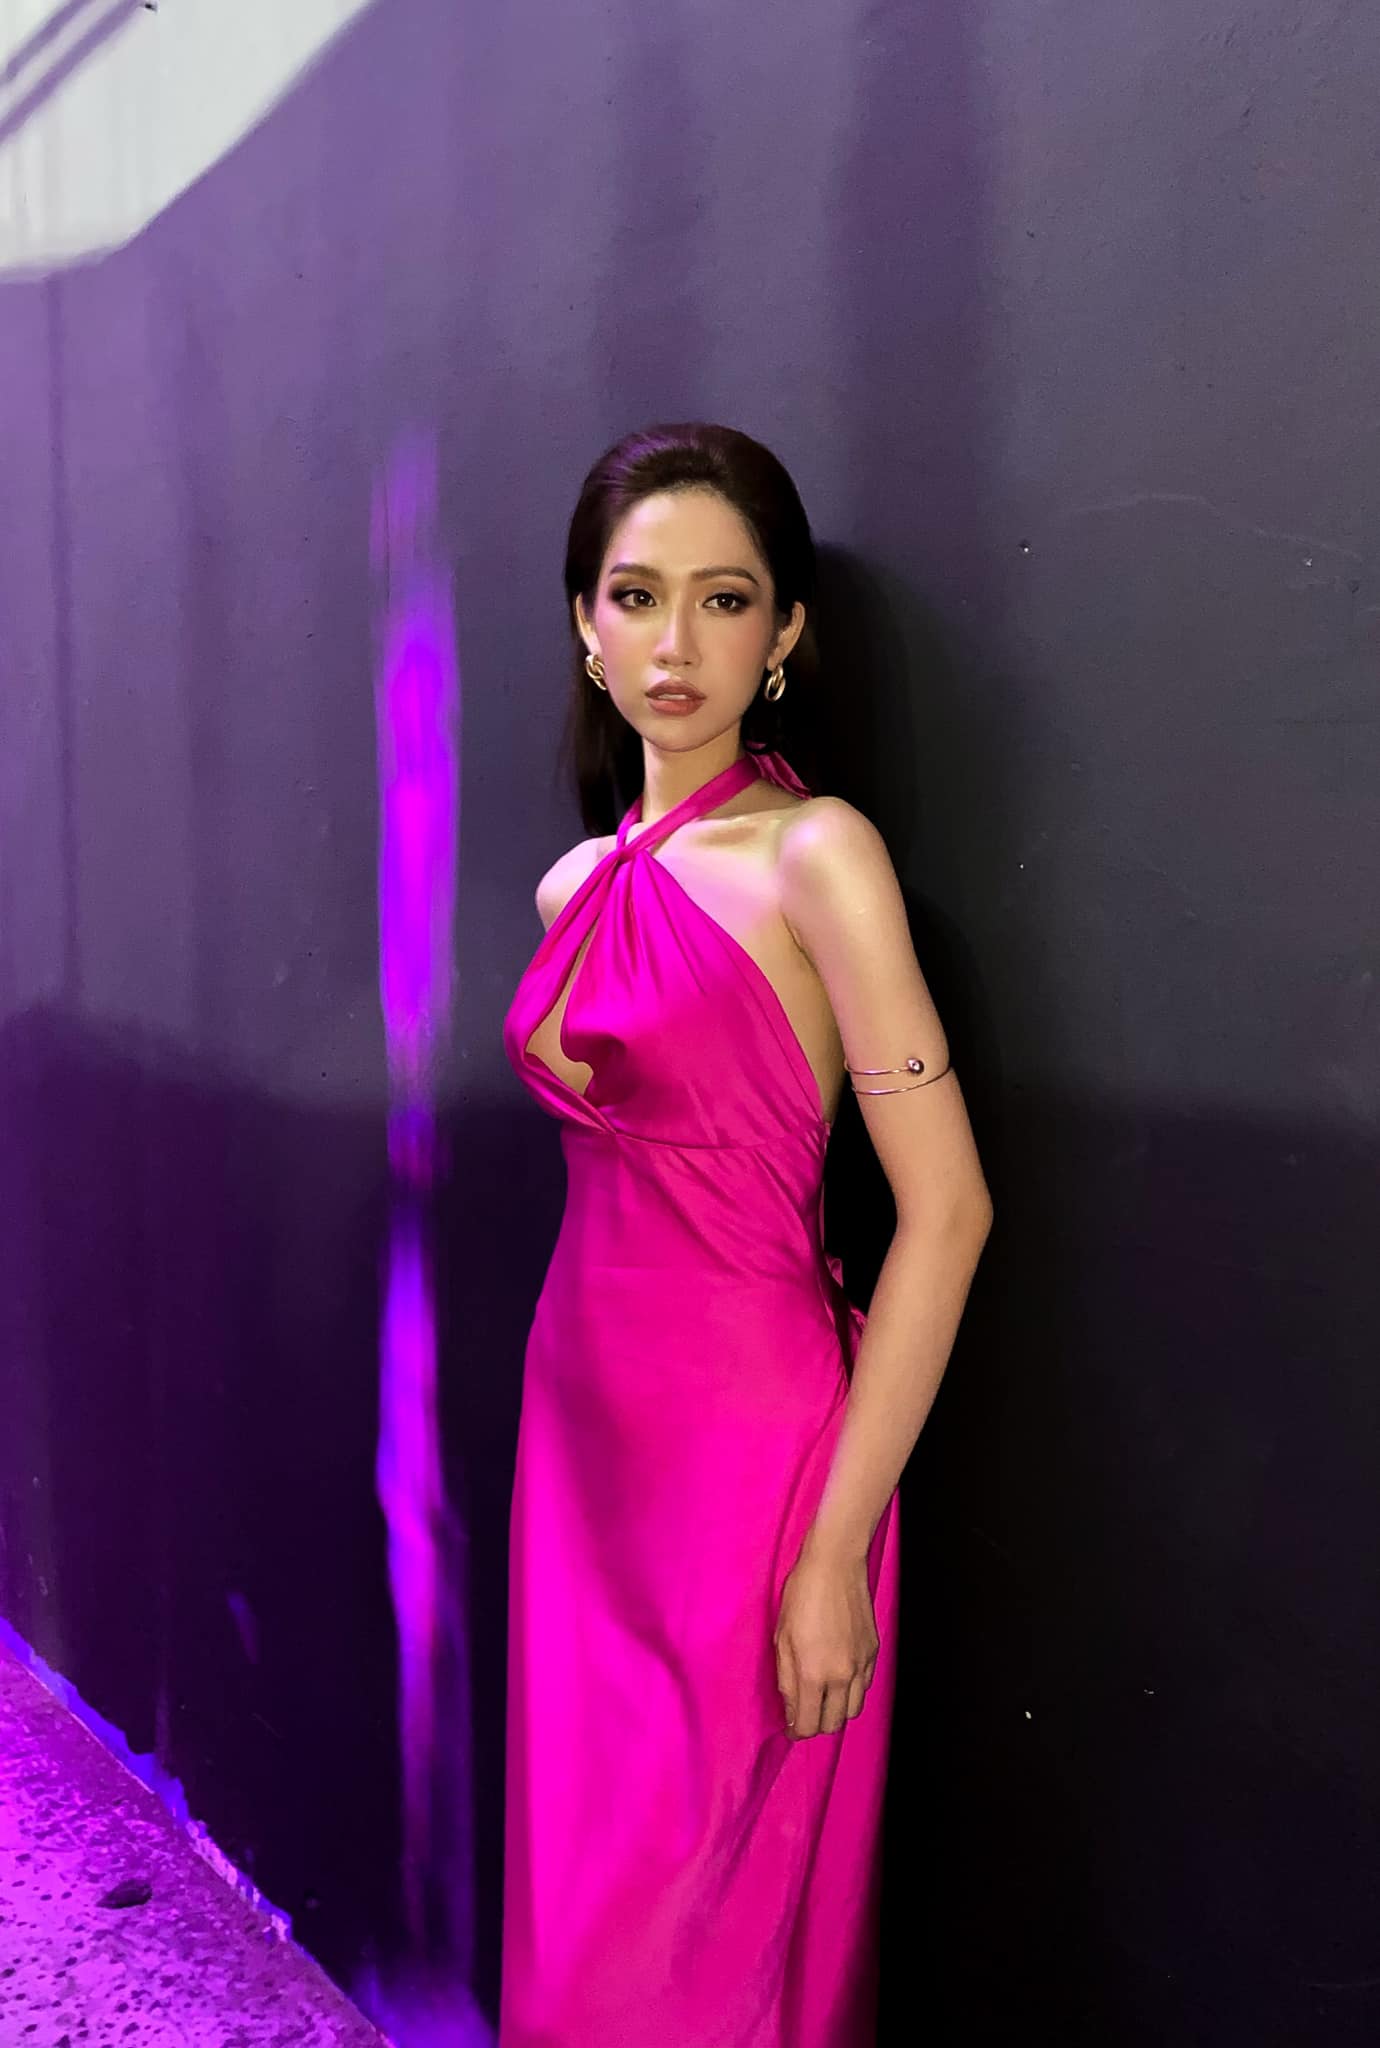 Người đẹp chuyển giới Đỗ Nhật Hà dẫn đầu bình chọn tại Miss Universe Vietnam, bỏ xa người thứ 2 - Ảnh 2